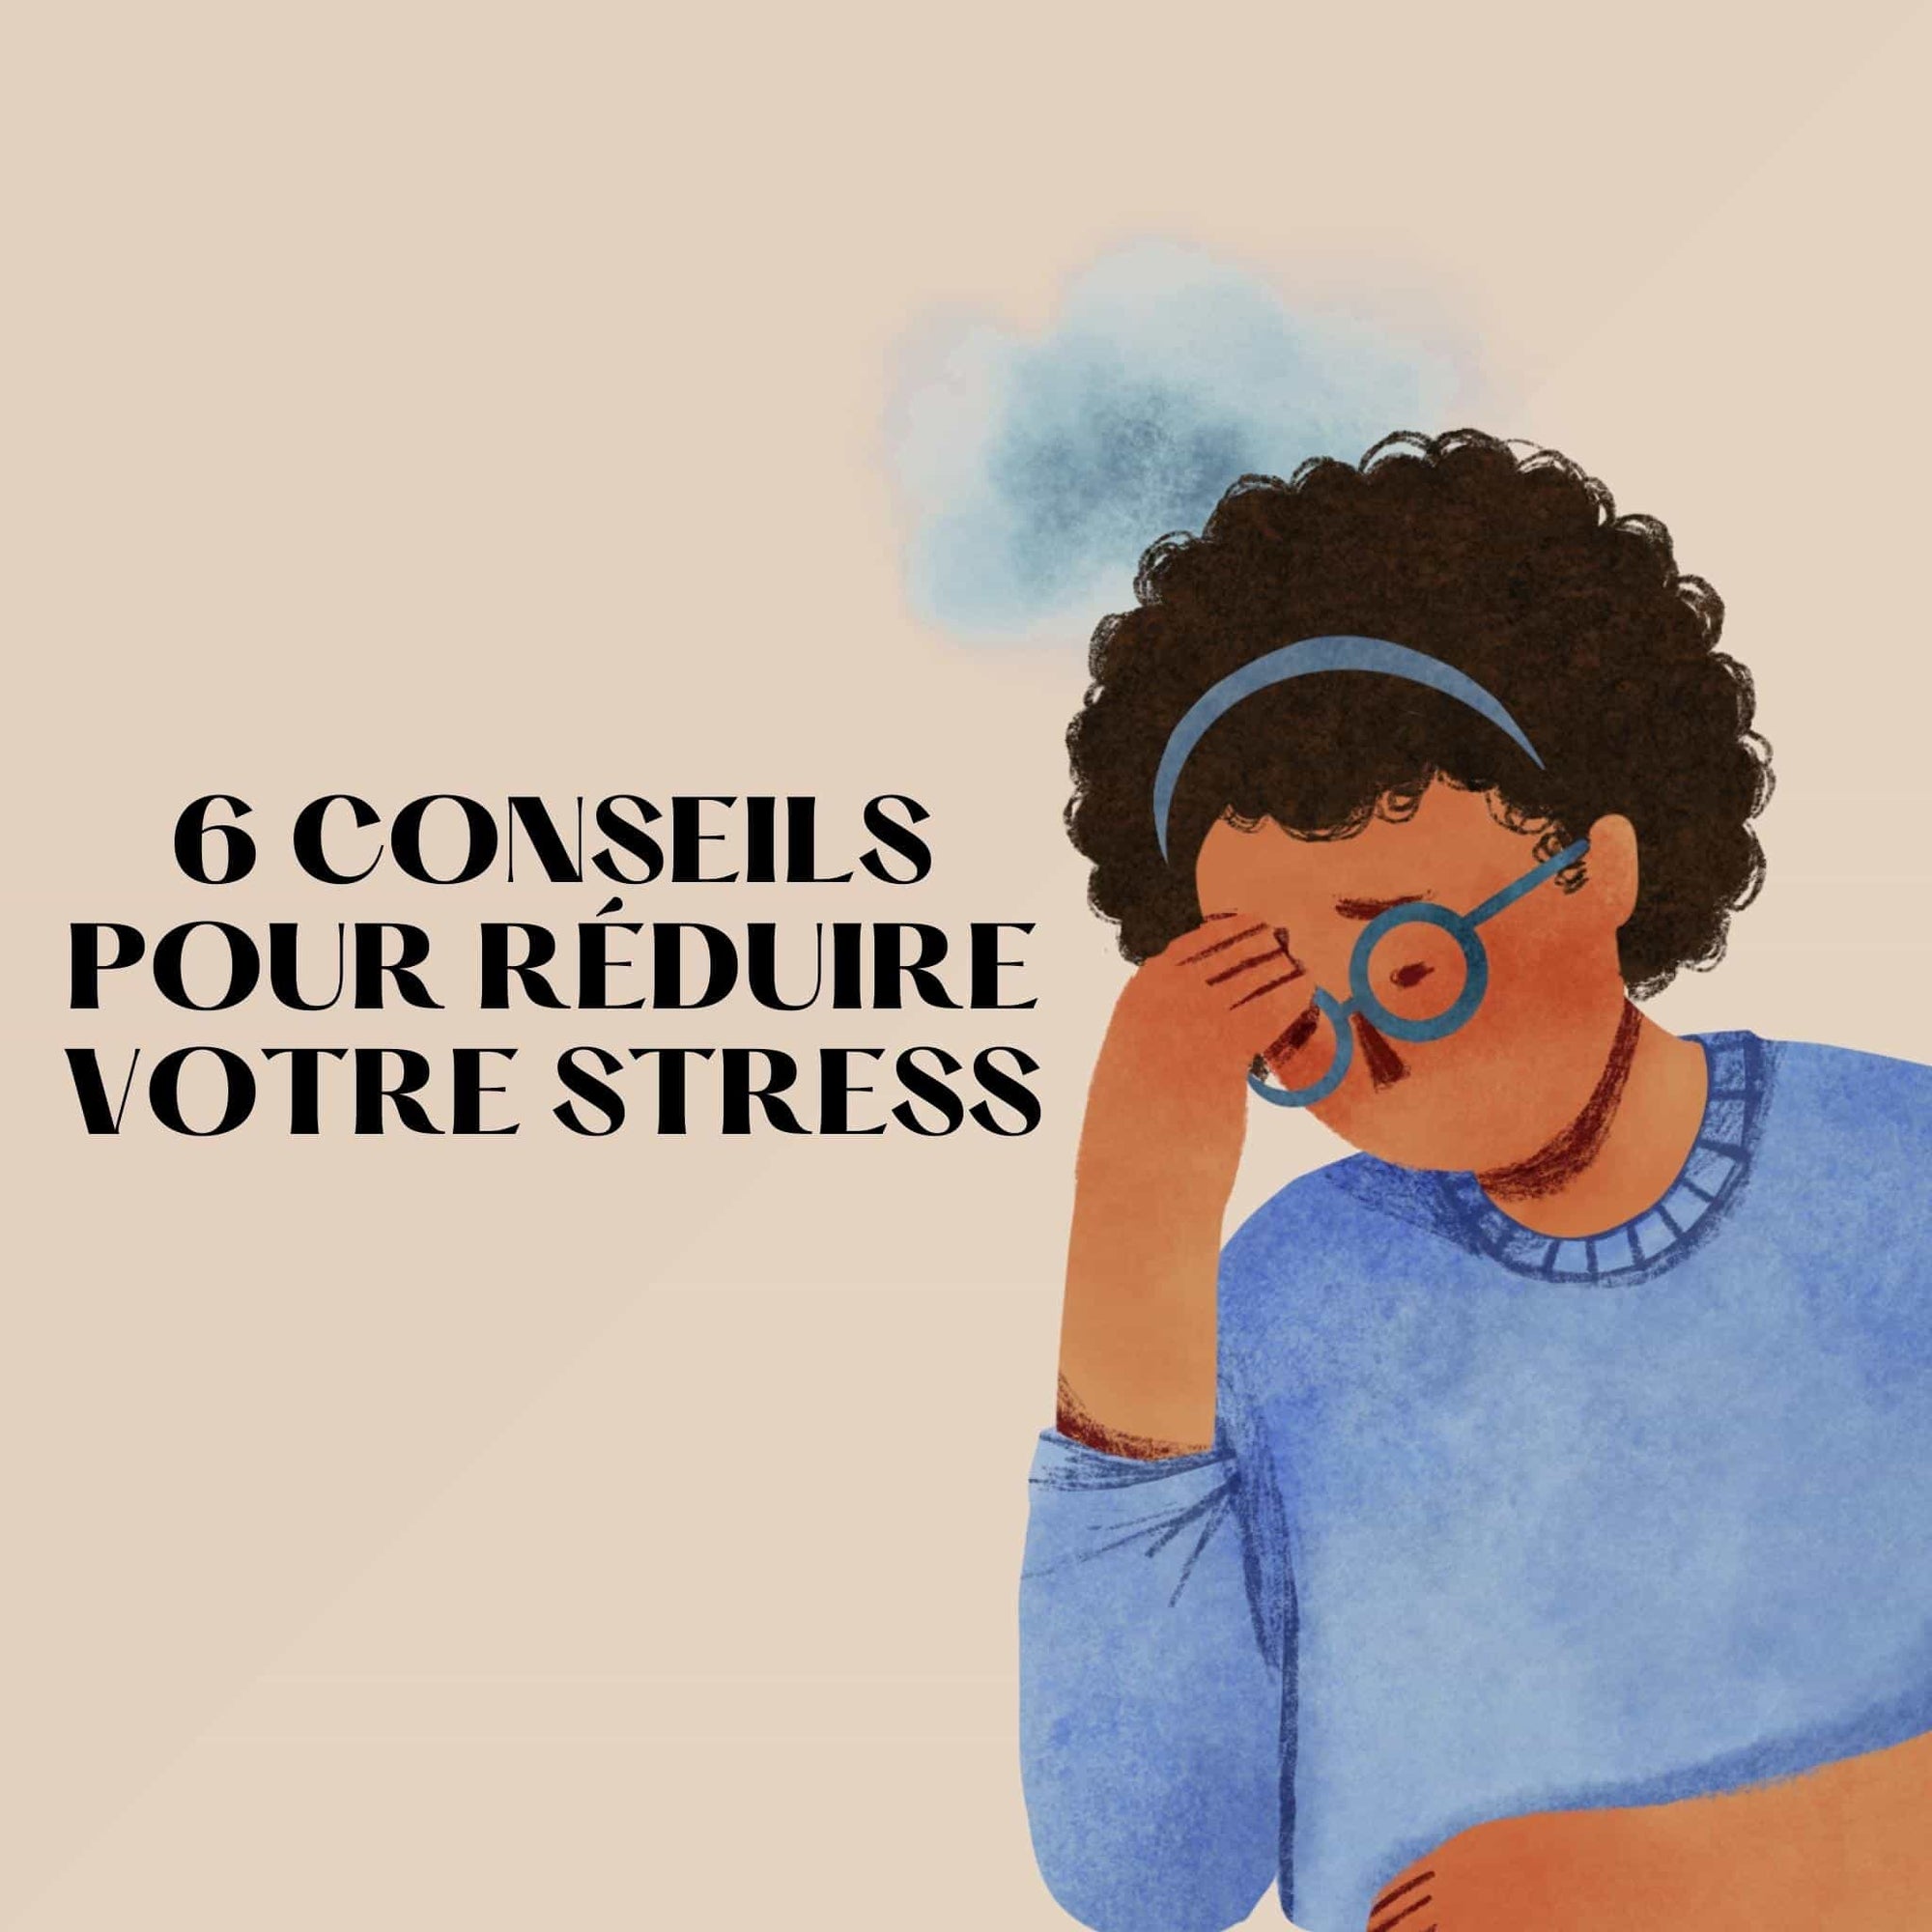 6 conseils pour réduire votre stress